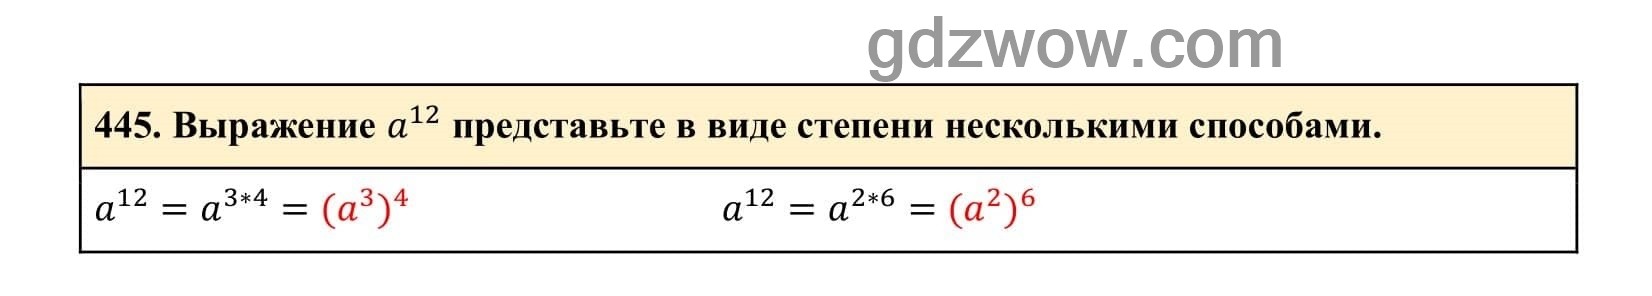 Упражнение 445 - ГДЗ по Алгебре 7 класс Учебник Макарычев (решебник) - GDZwow